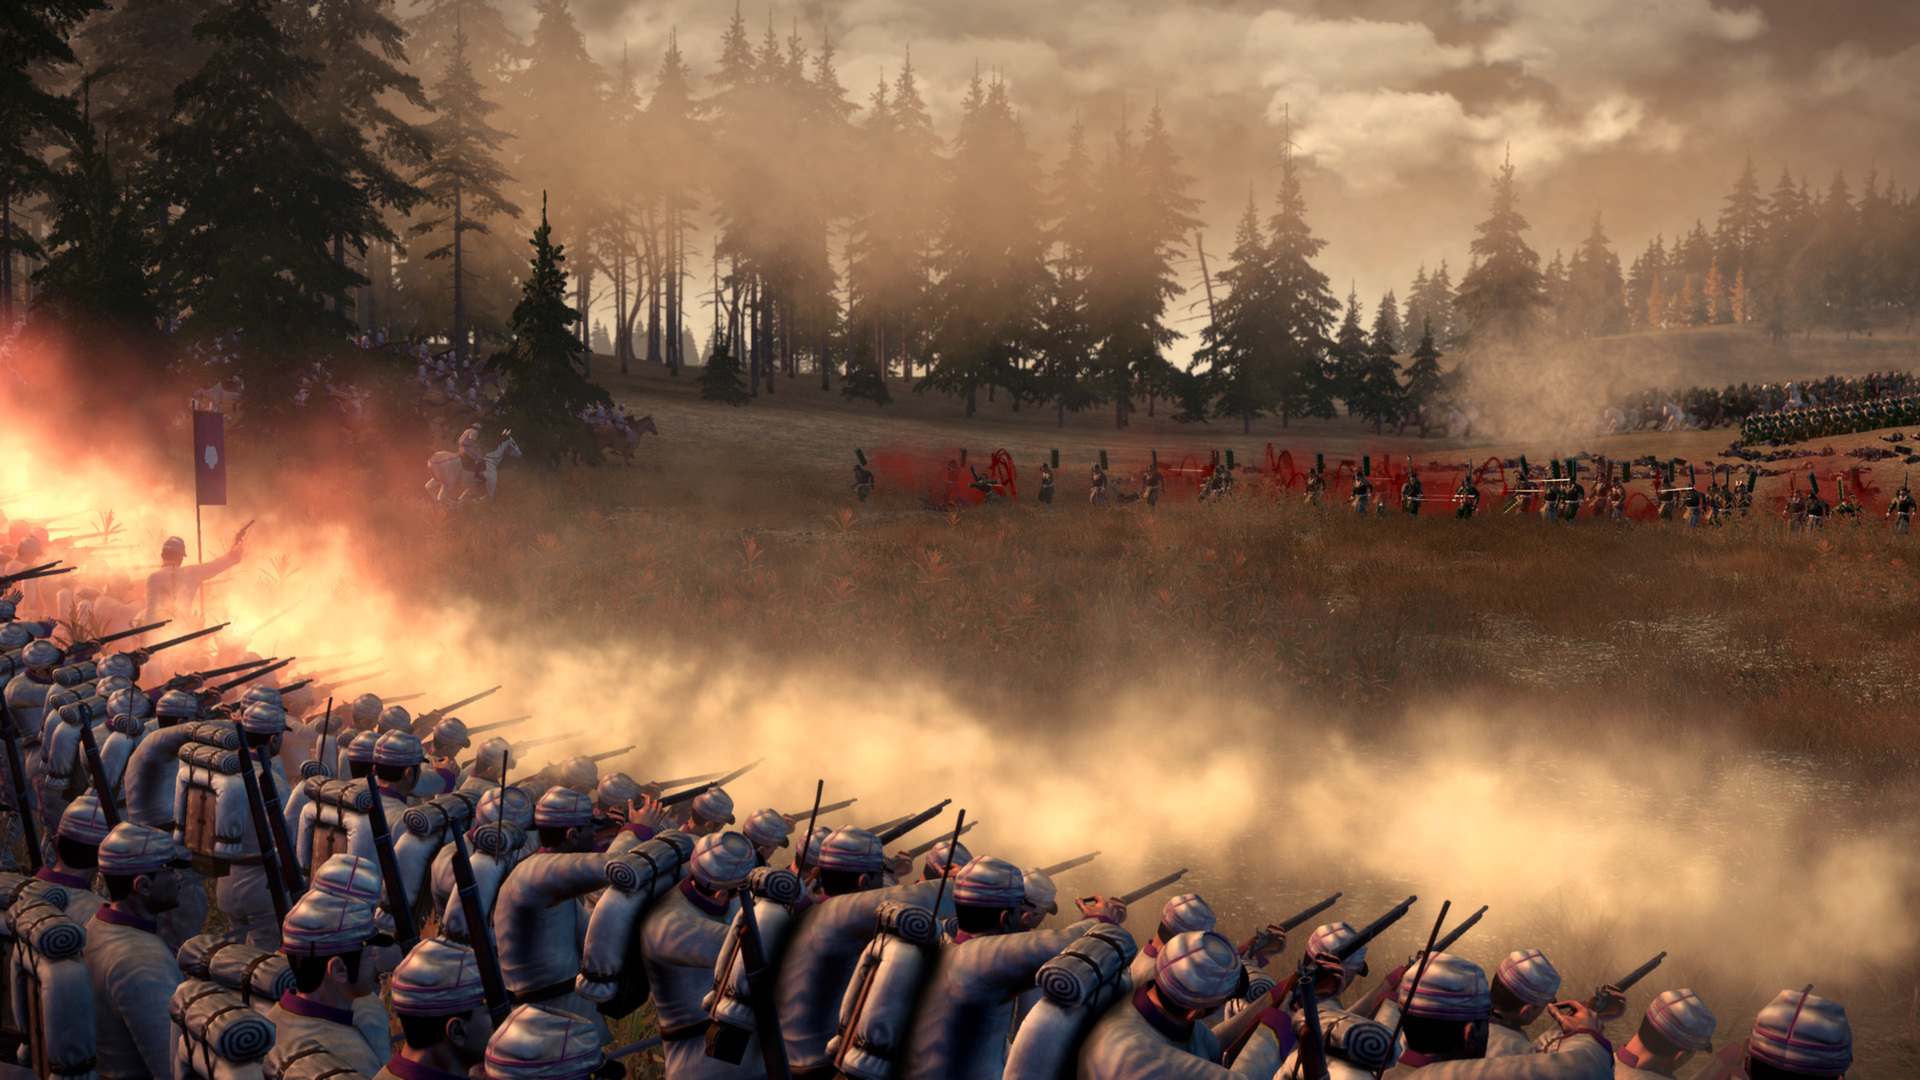 Total War: Shogun 2 estará disponível gratuitamente na Steam este